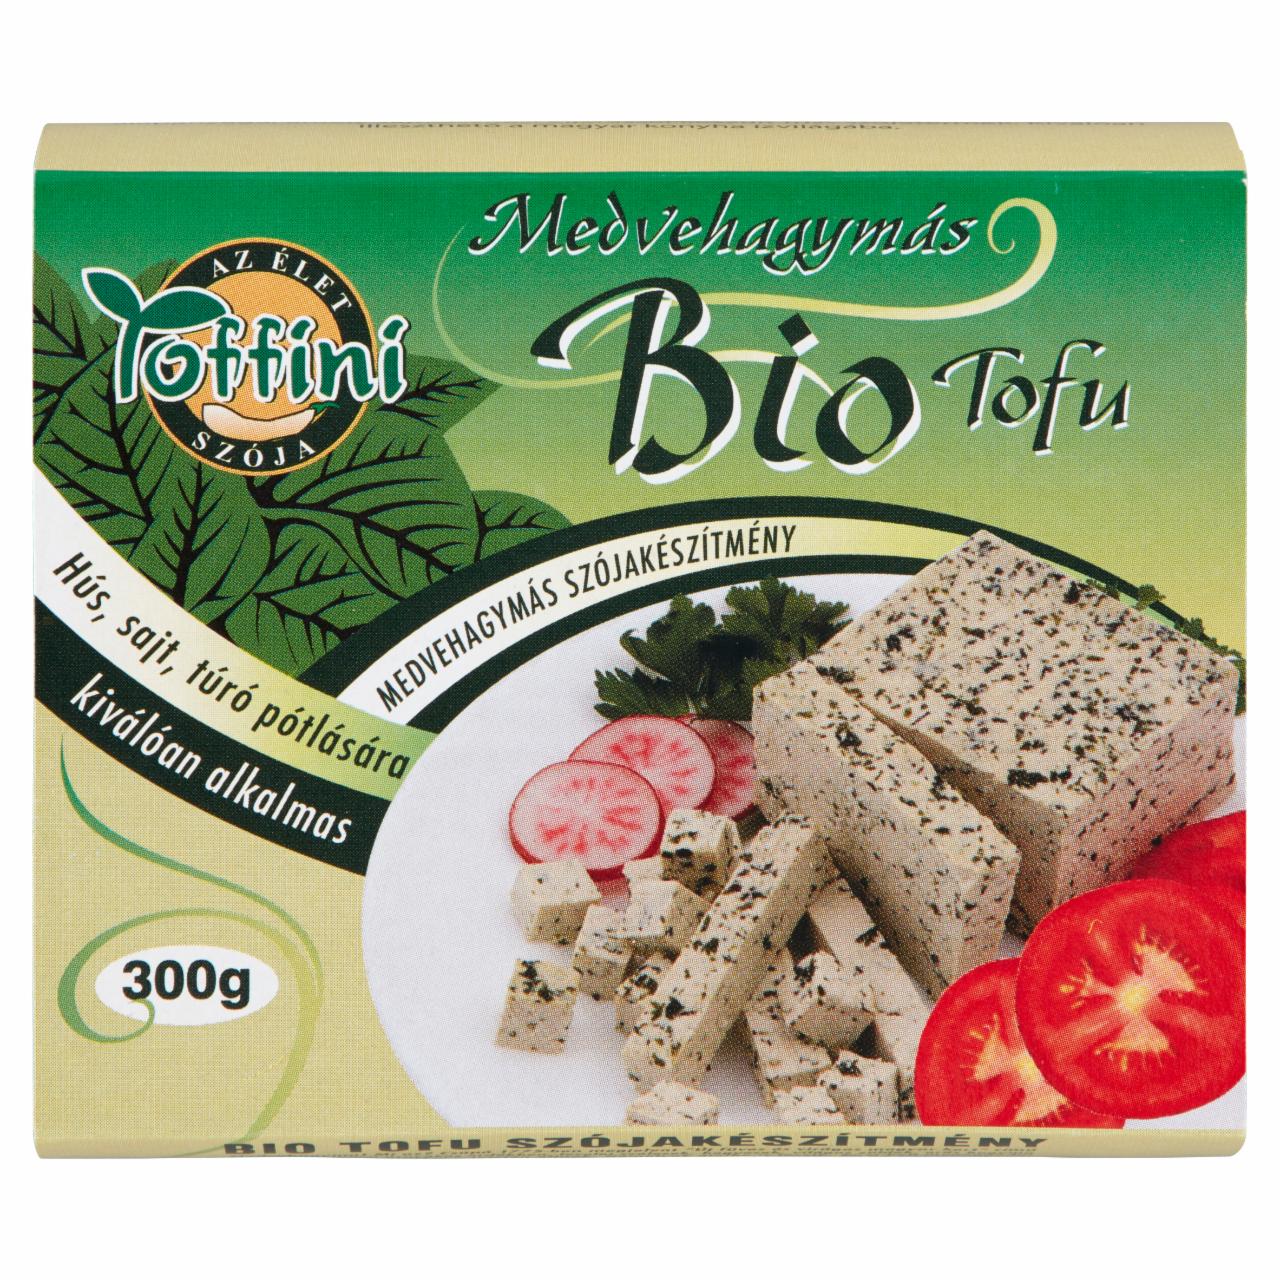 Képek - Toffini medvehagymás BIO tofu 300 g